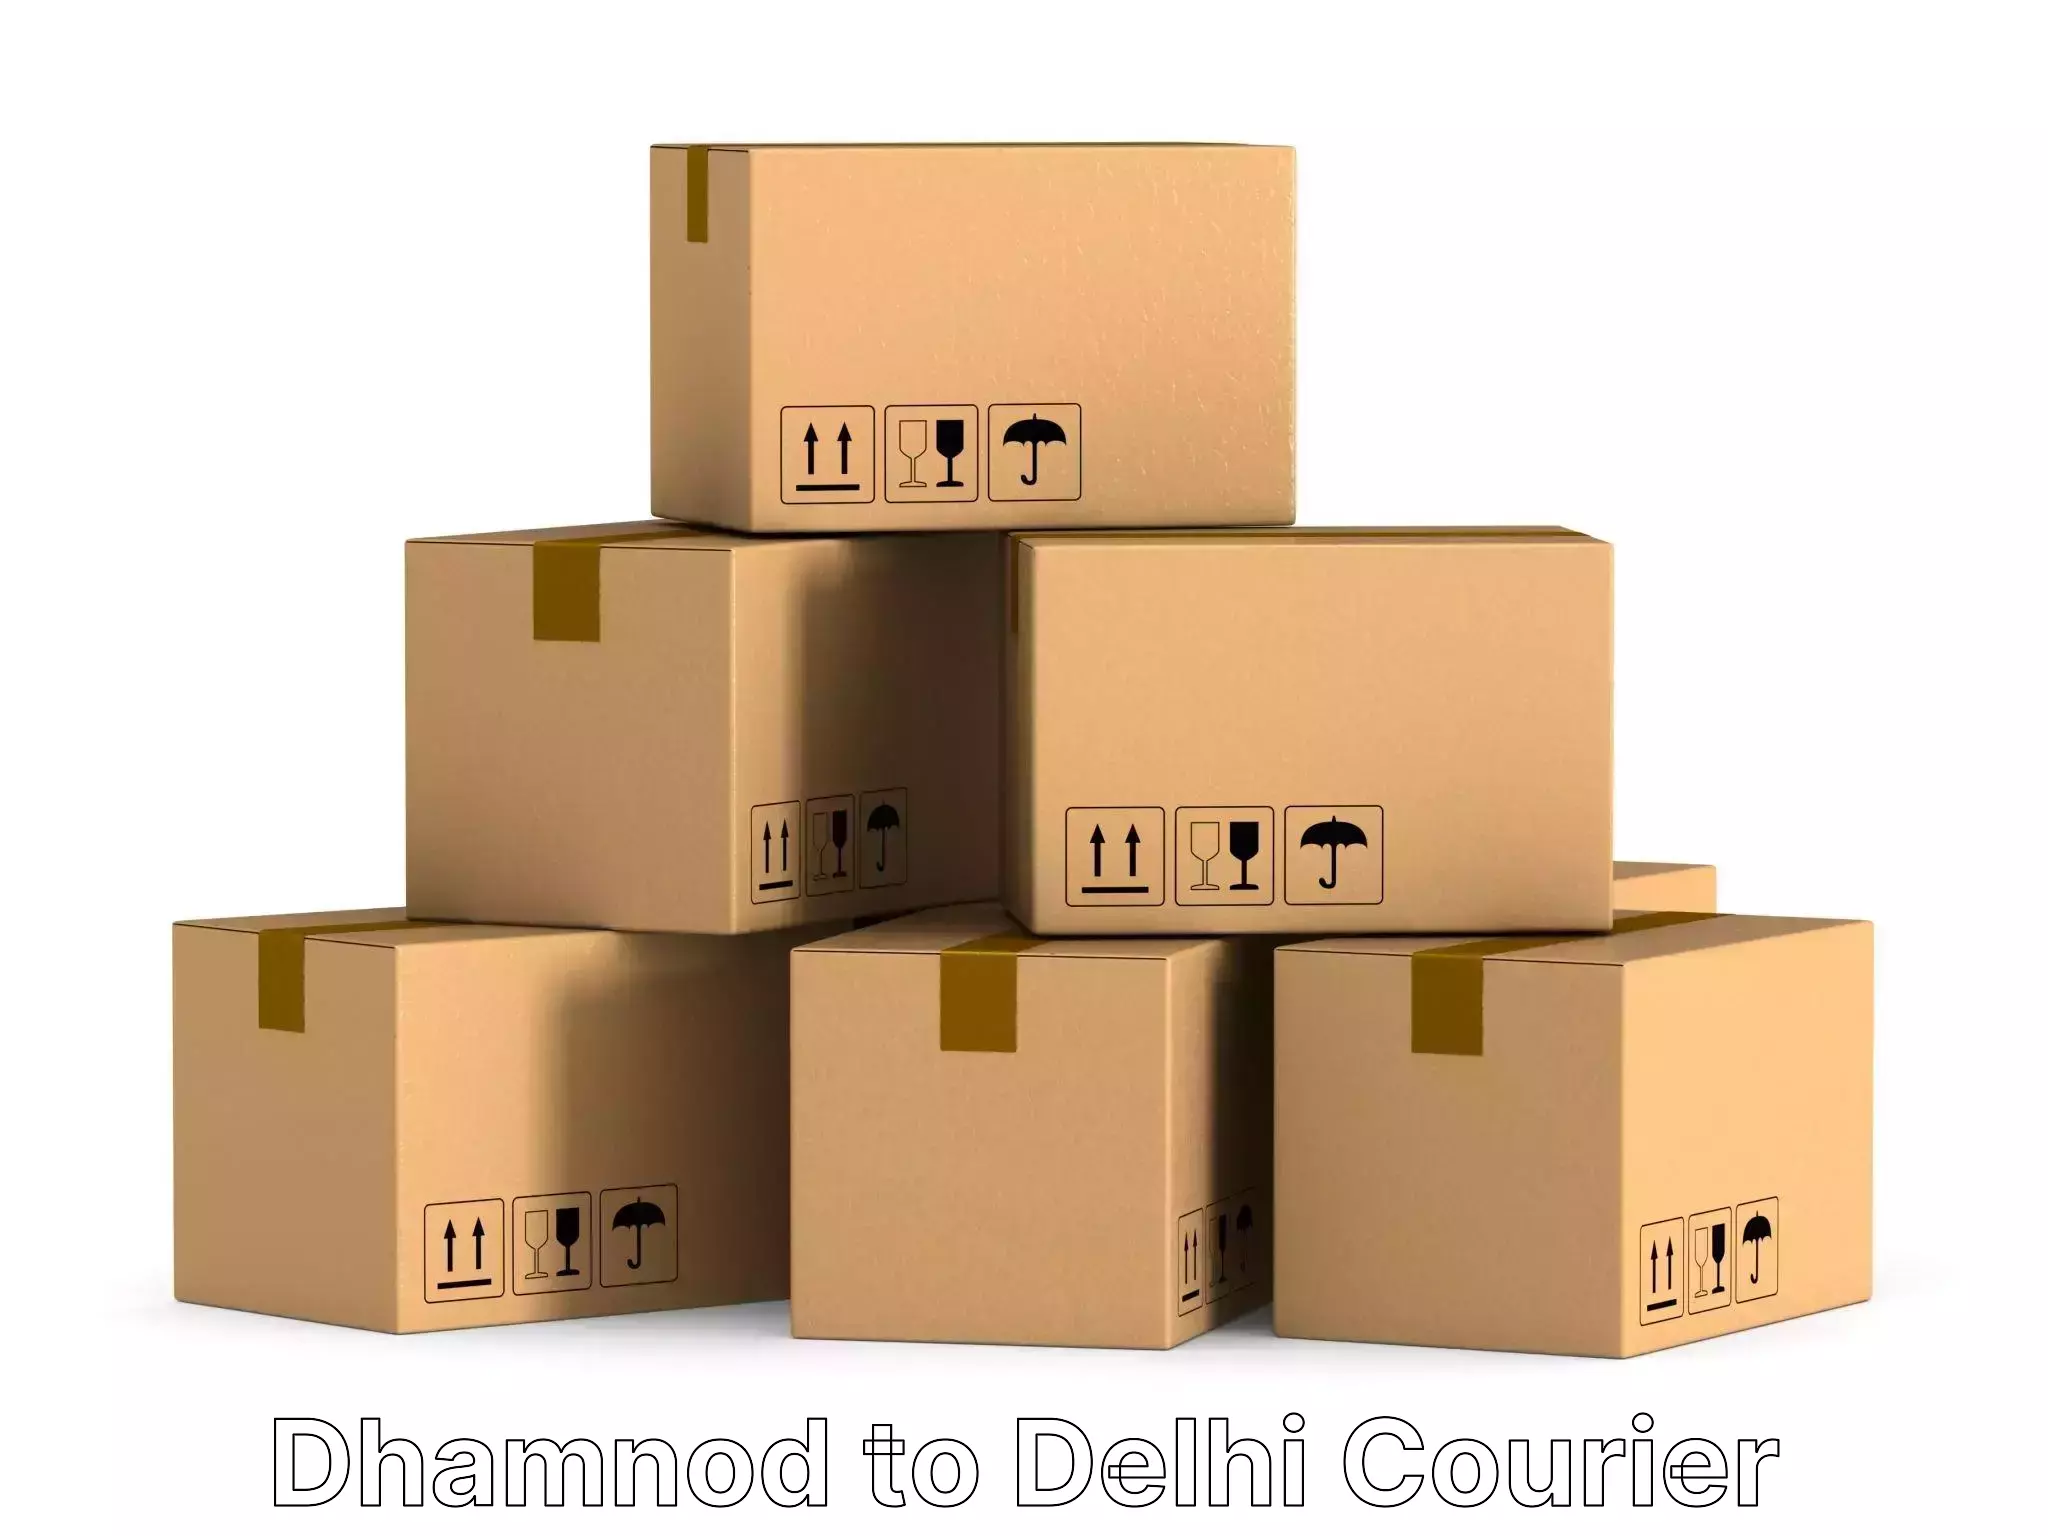 Nationwide furniture transport Dhamnod to Ramesh Nagar